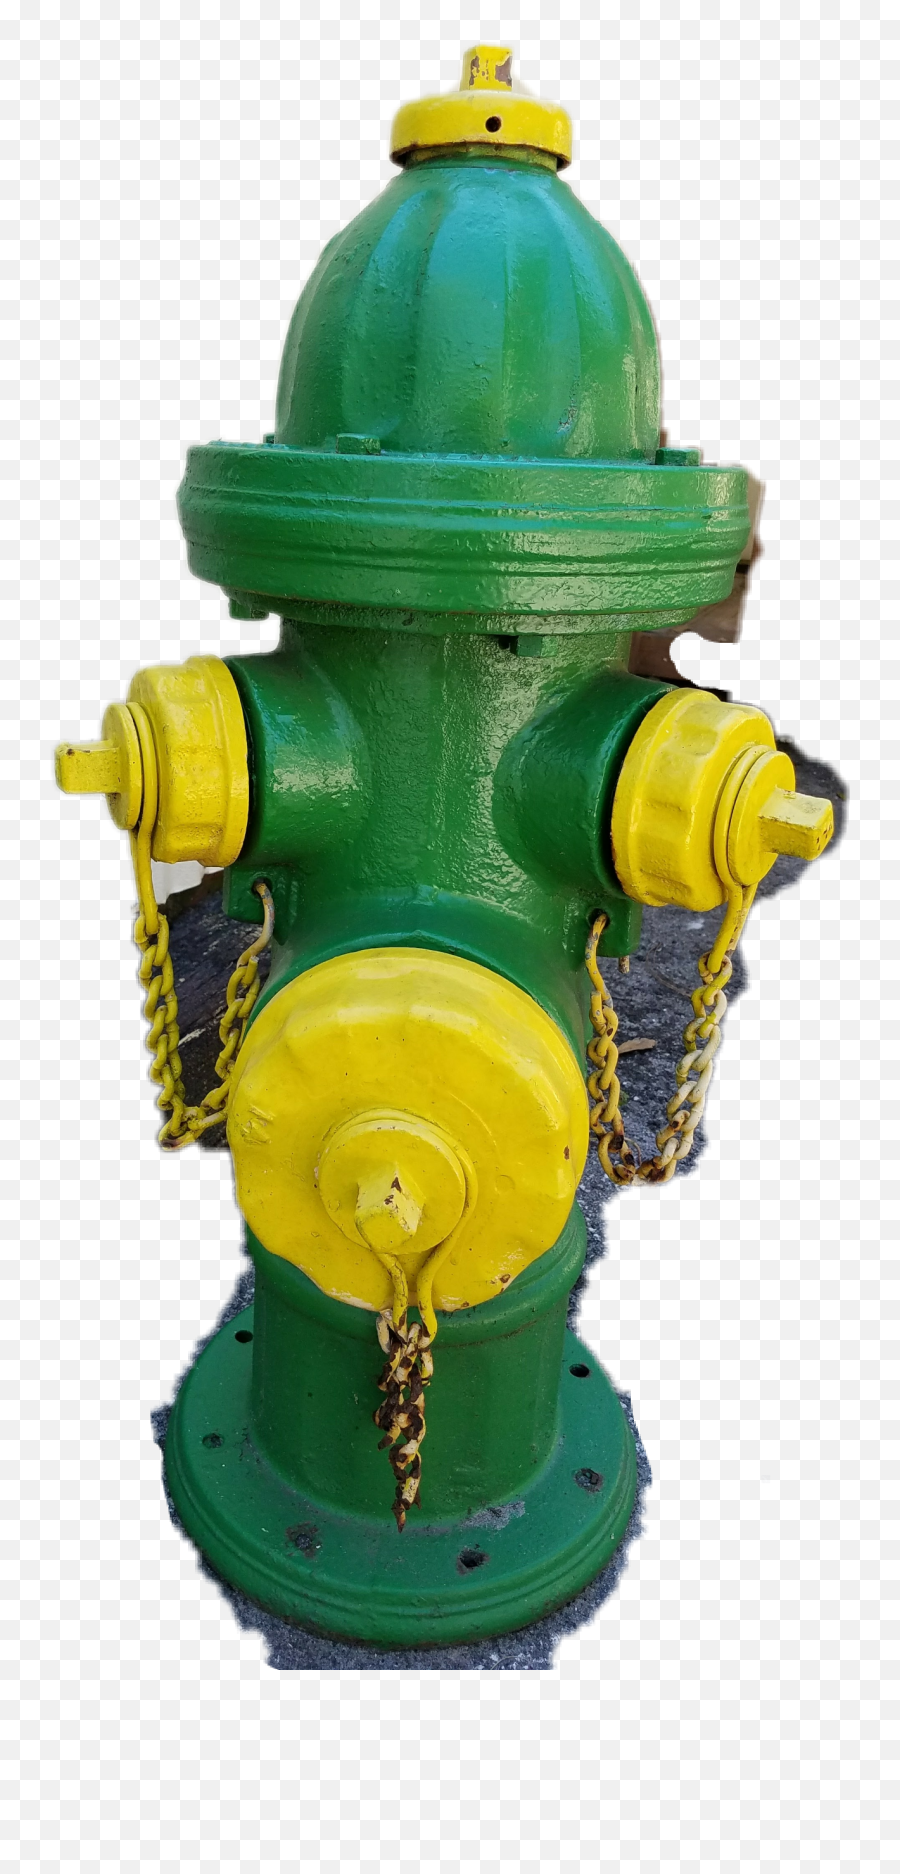 Fire Hydrant - Toy Emoji,Fire Hydrant Emoji